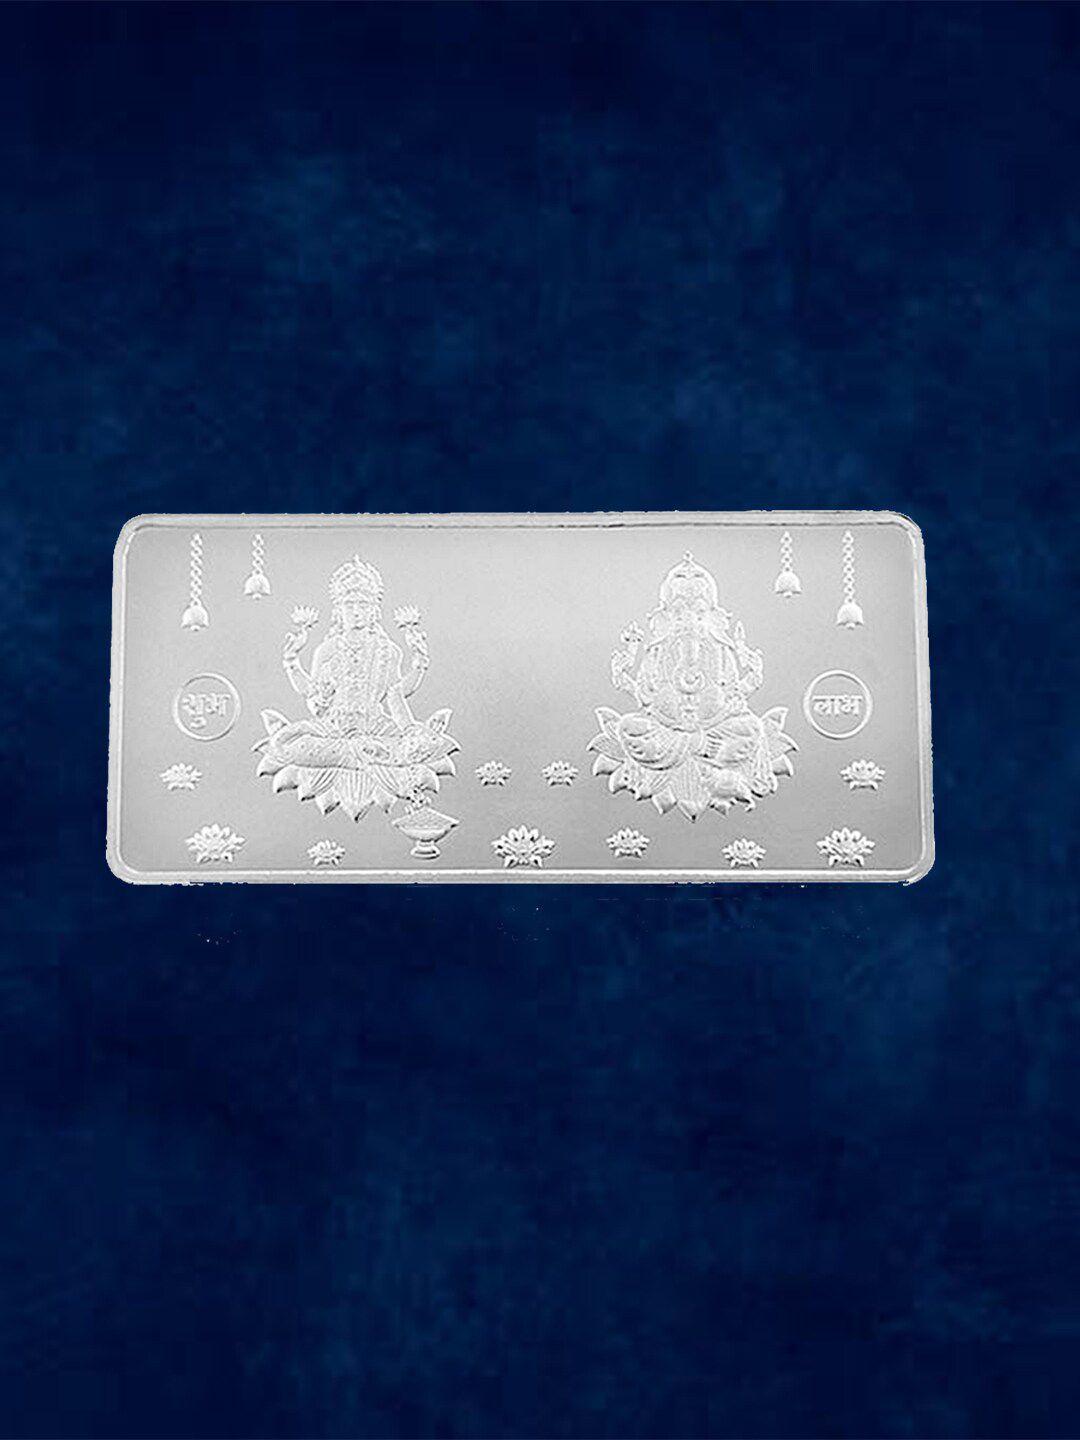 taraash lord ganesh & goddess lakshmi 999 silver coin bar - 10 gram